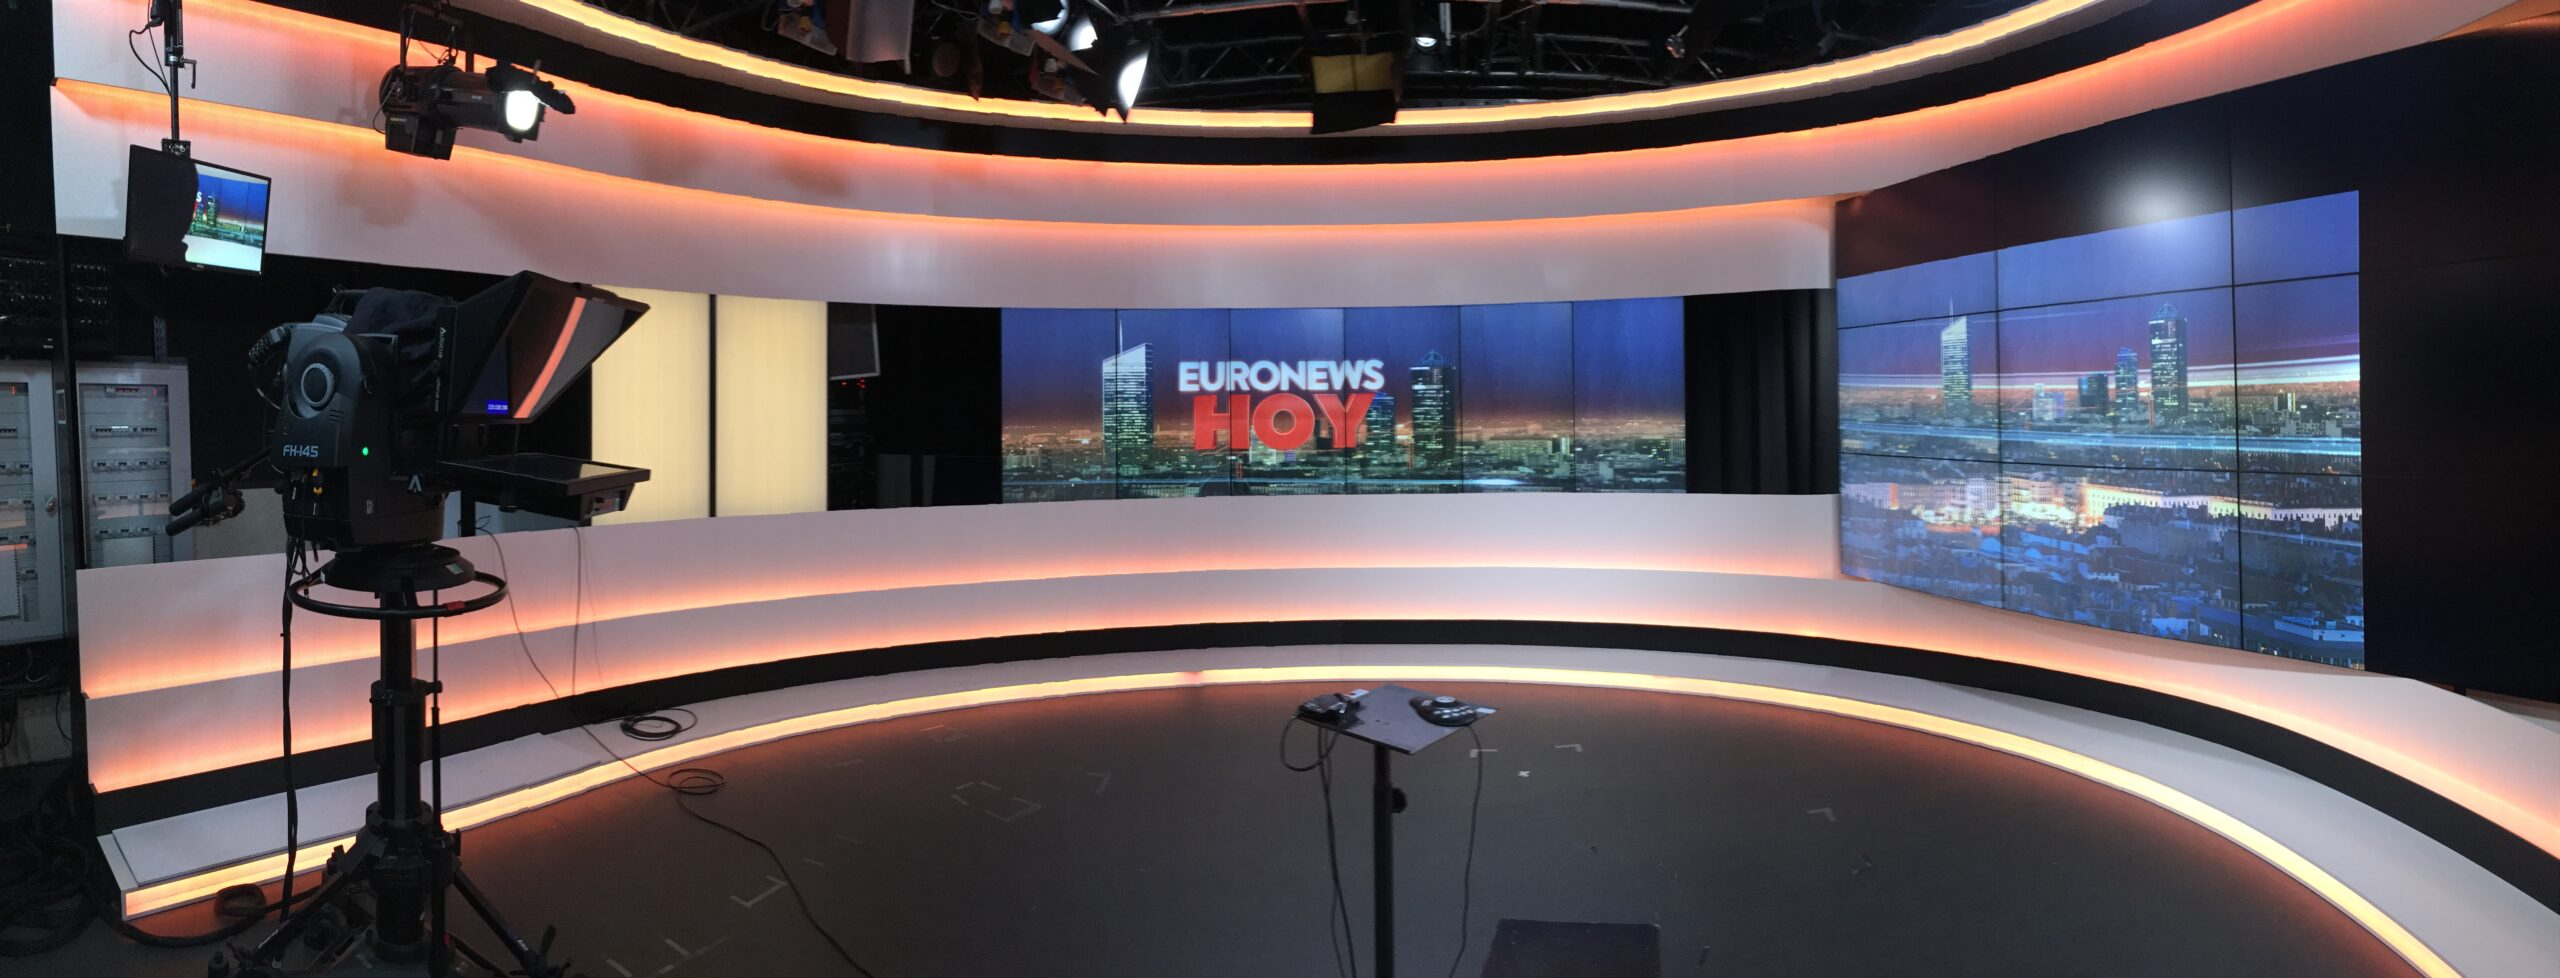 Euronews s’apprête à licencier une cinquantaine de personnes